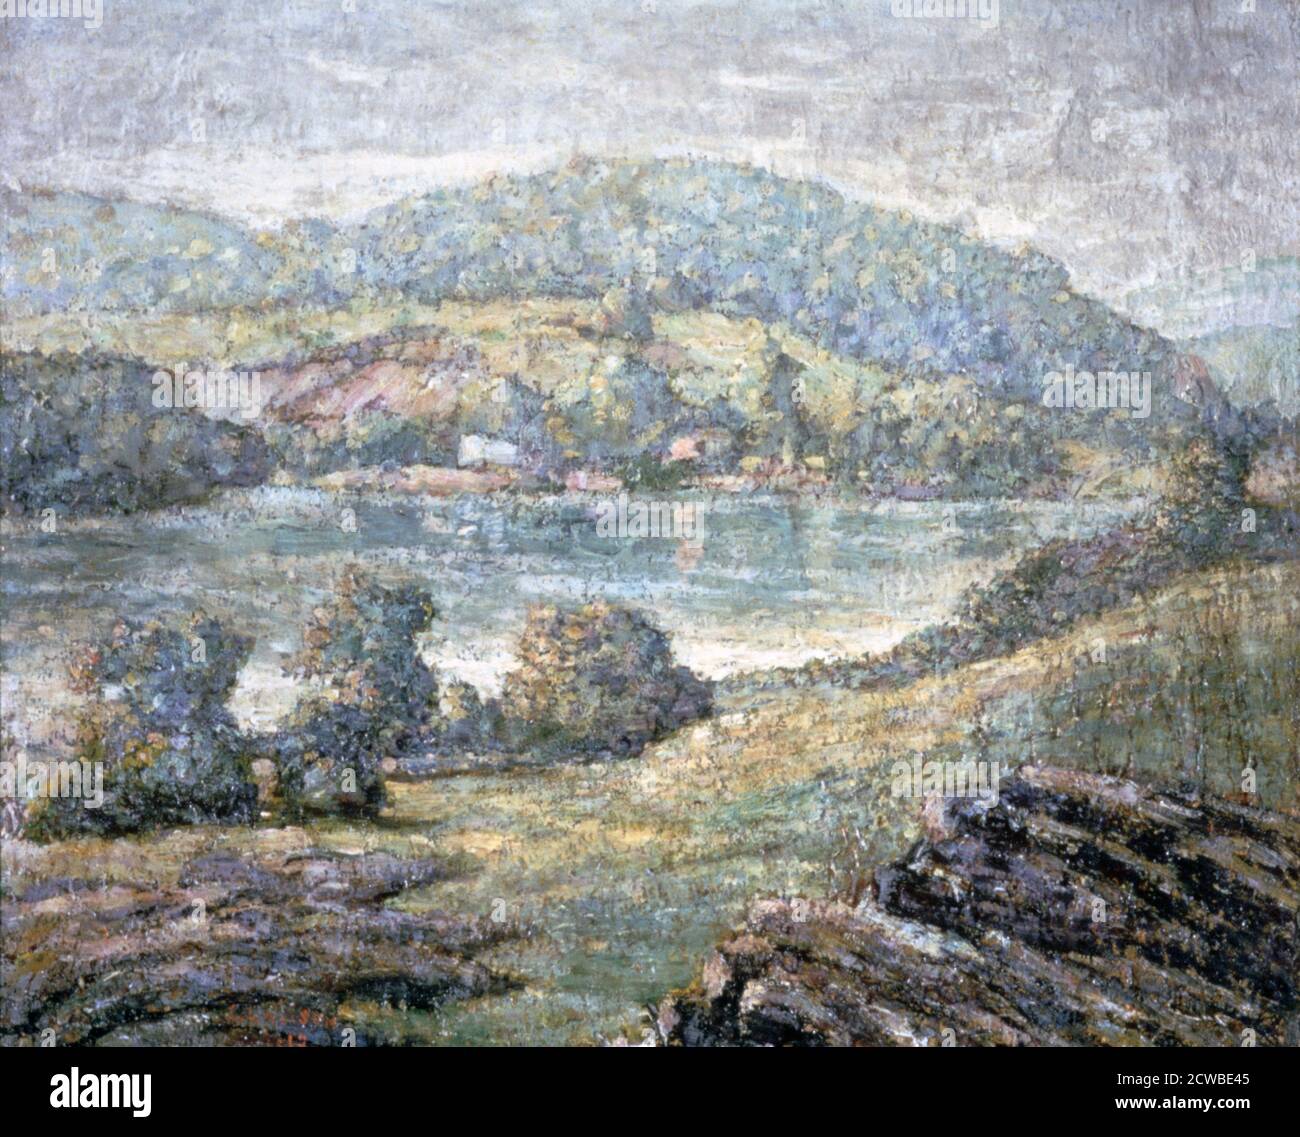 'Morning Light, River Valley, Connecticut', 1919 Künstler: Ernest Lawson. Lawson war einer der acht realistischen Genremaler, die auch Ashcan School genannt wurden. Aber heute ist er besser bekannt für seine impressionistischen Landschaften. Stockfoto